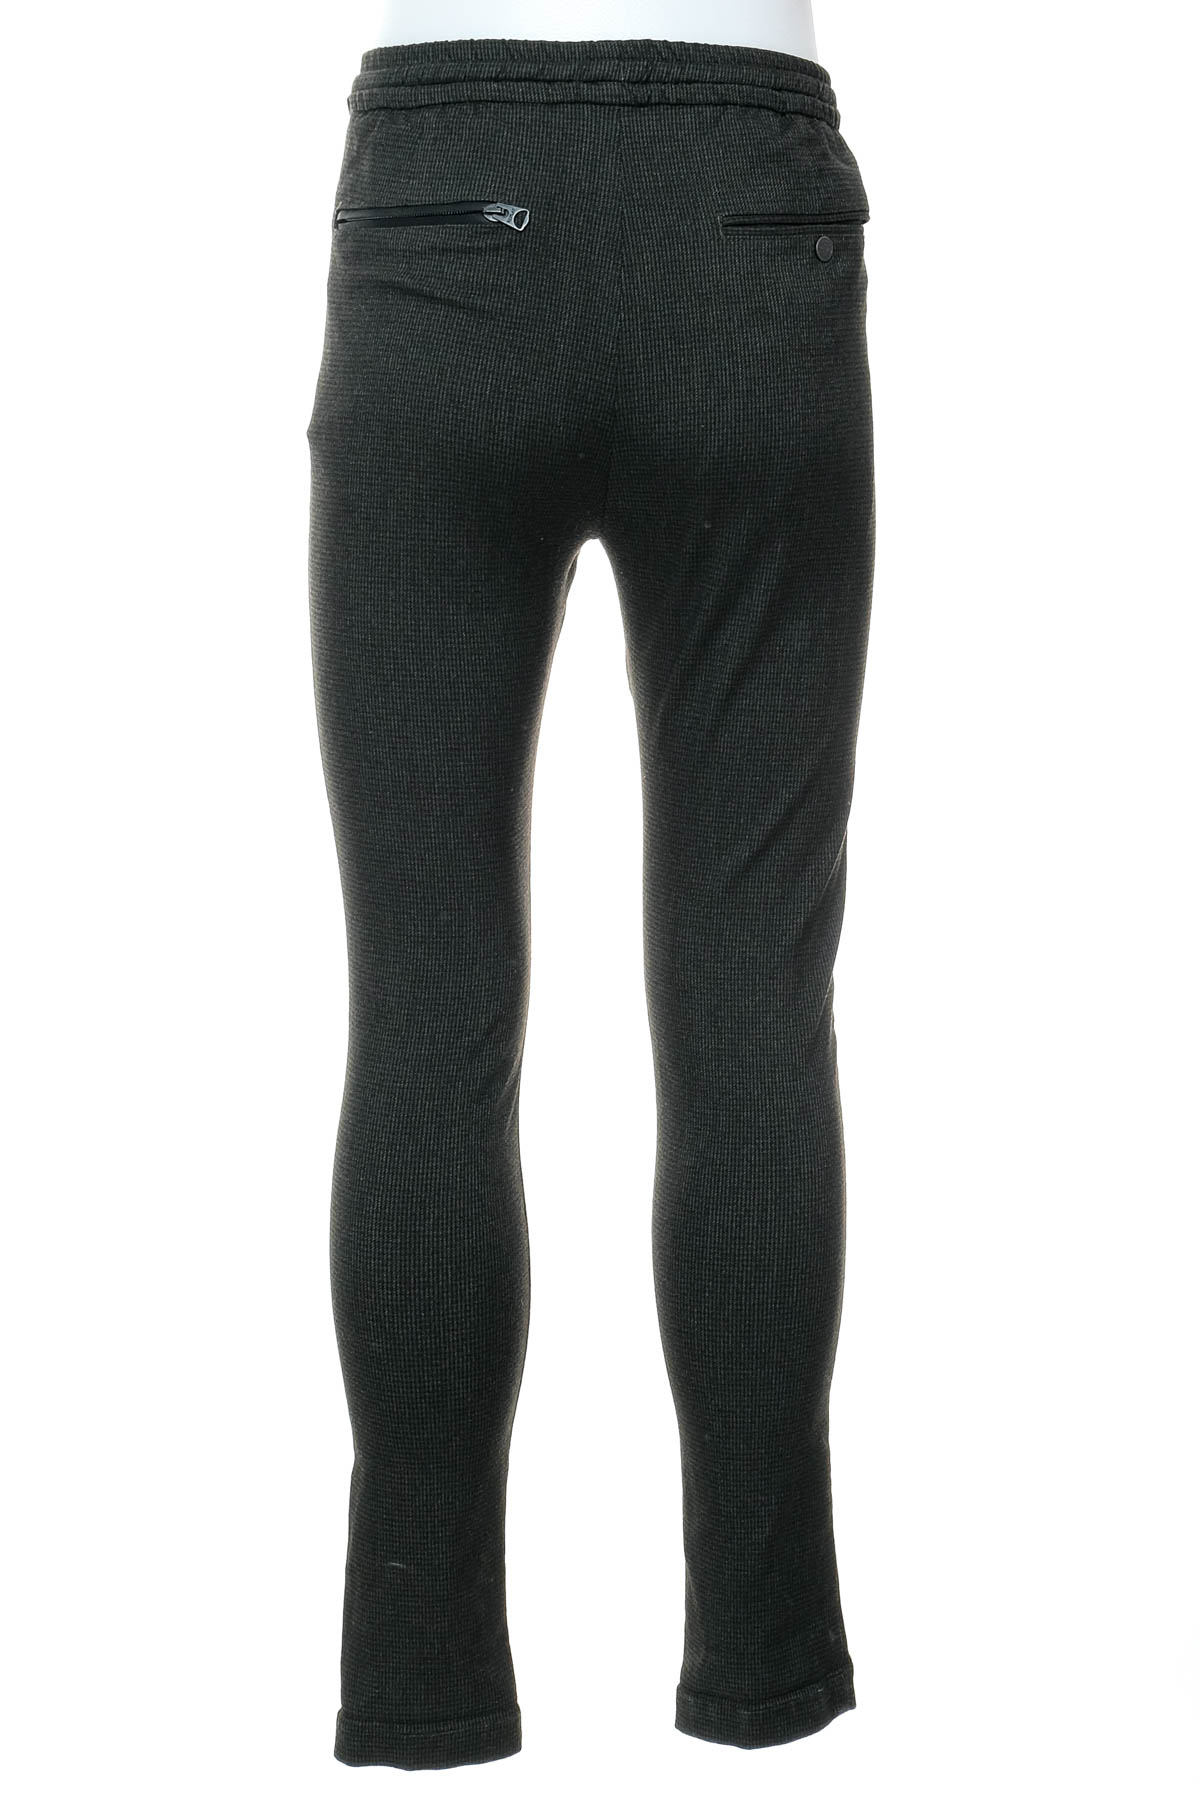 Pantalon pentru bărbați - REPLAY - 1